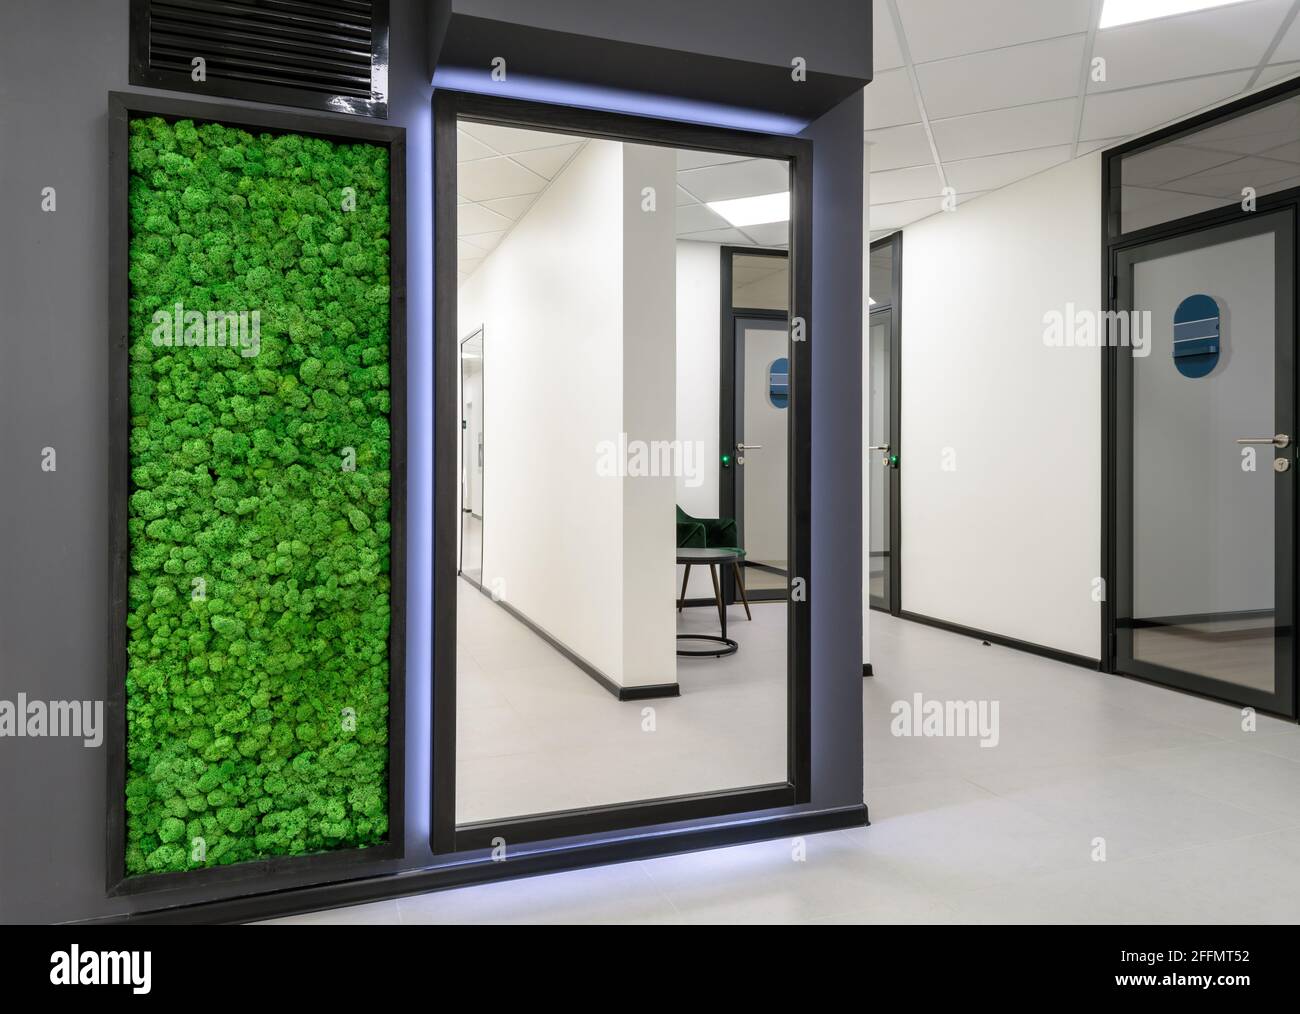 Oficina interior con jardín vertical. Pared de musgo verde en un pasillo limpio del edificio comercial. Diseño interior minimalista con espejo y paisaje. Foto de stock